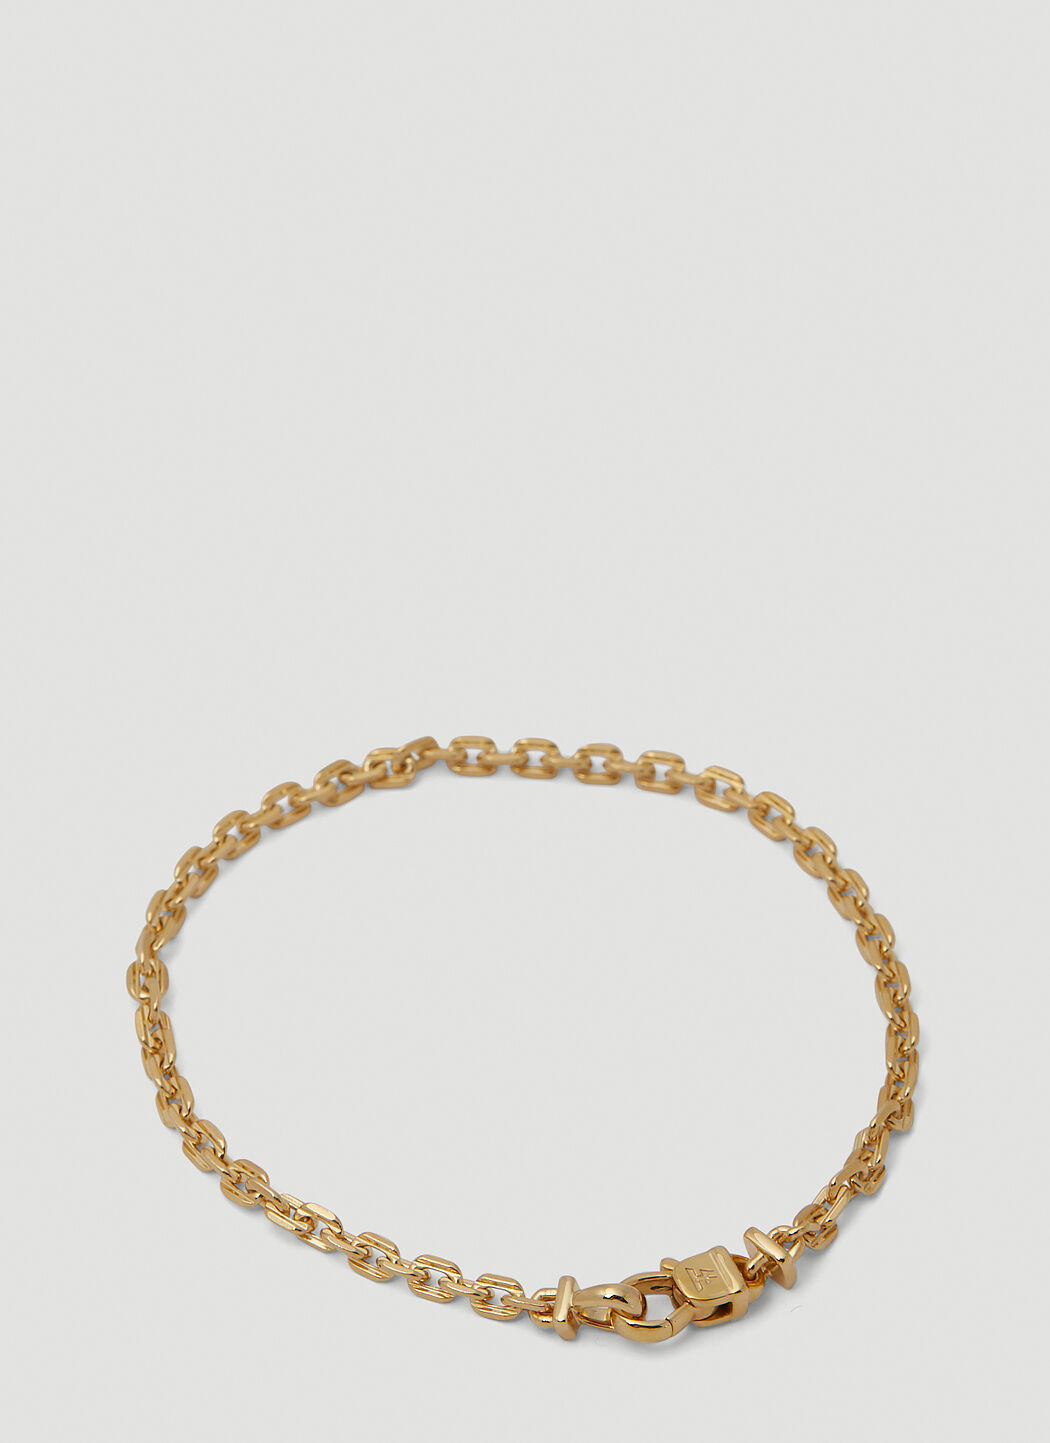 Anker Chain Bracelet